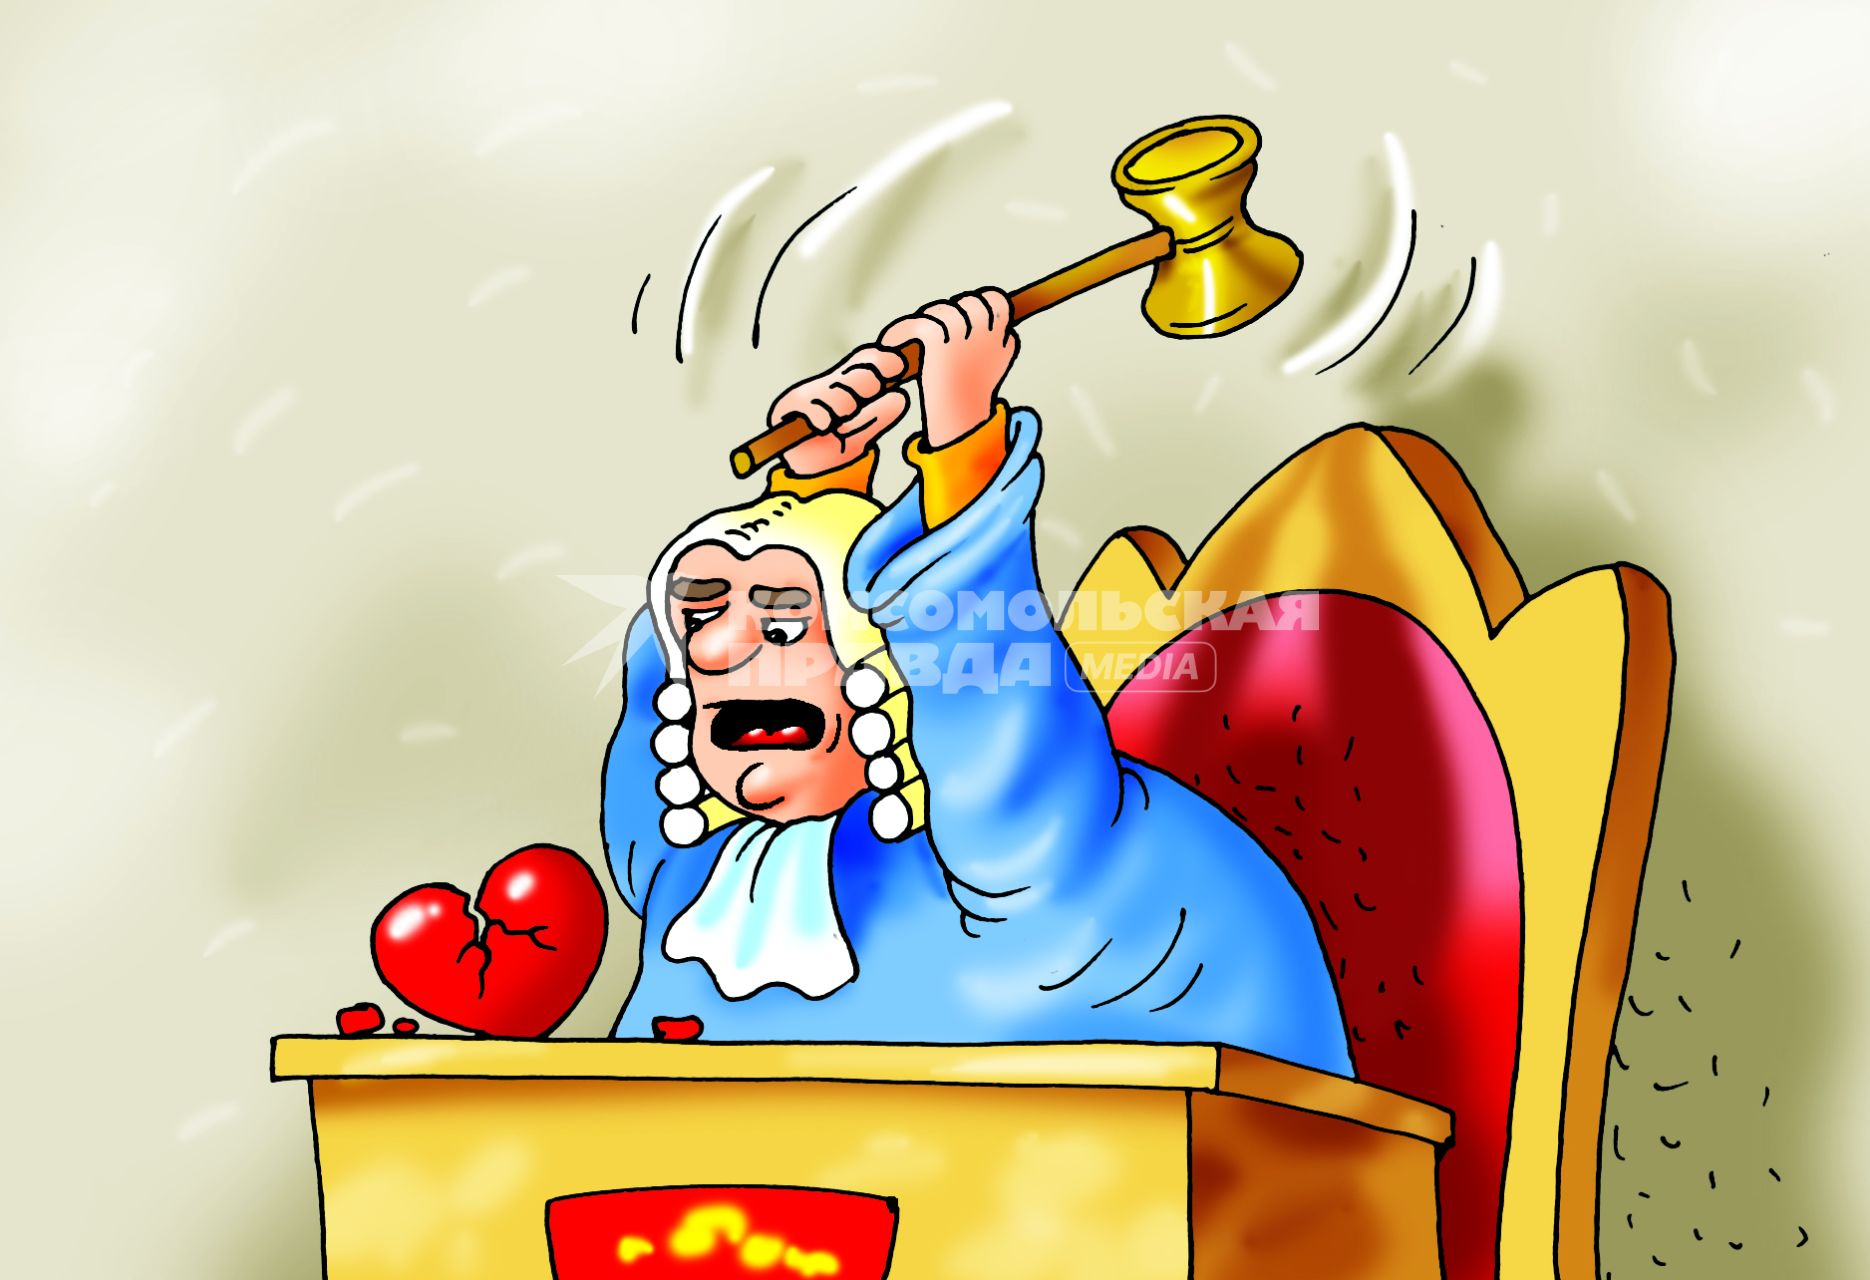 Карикатура на тему развода в суде.